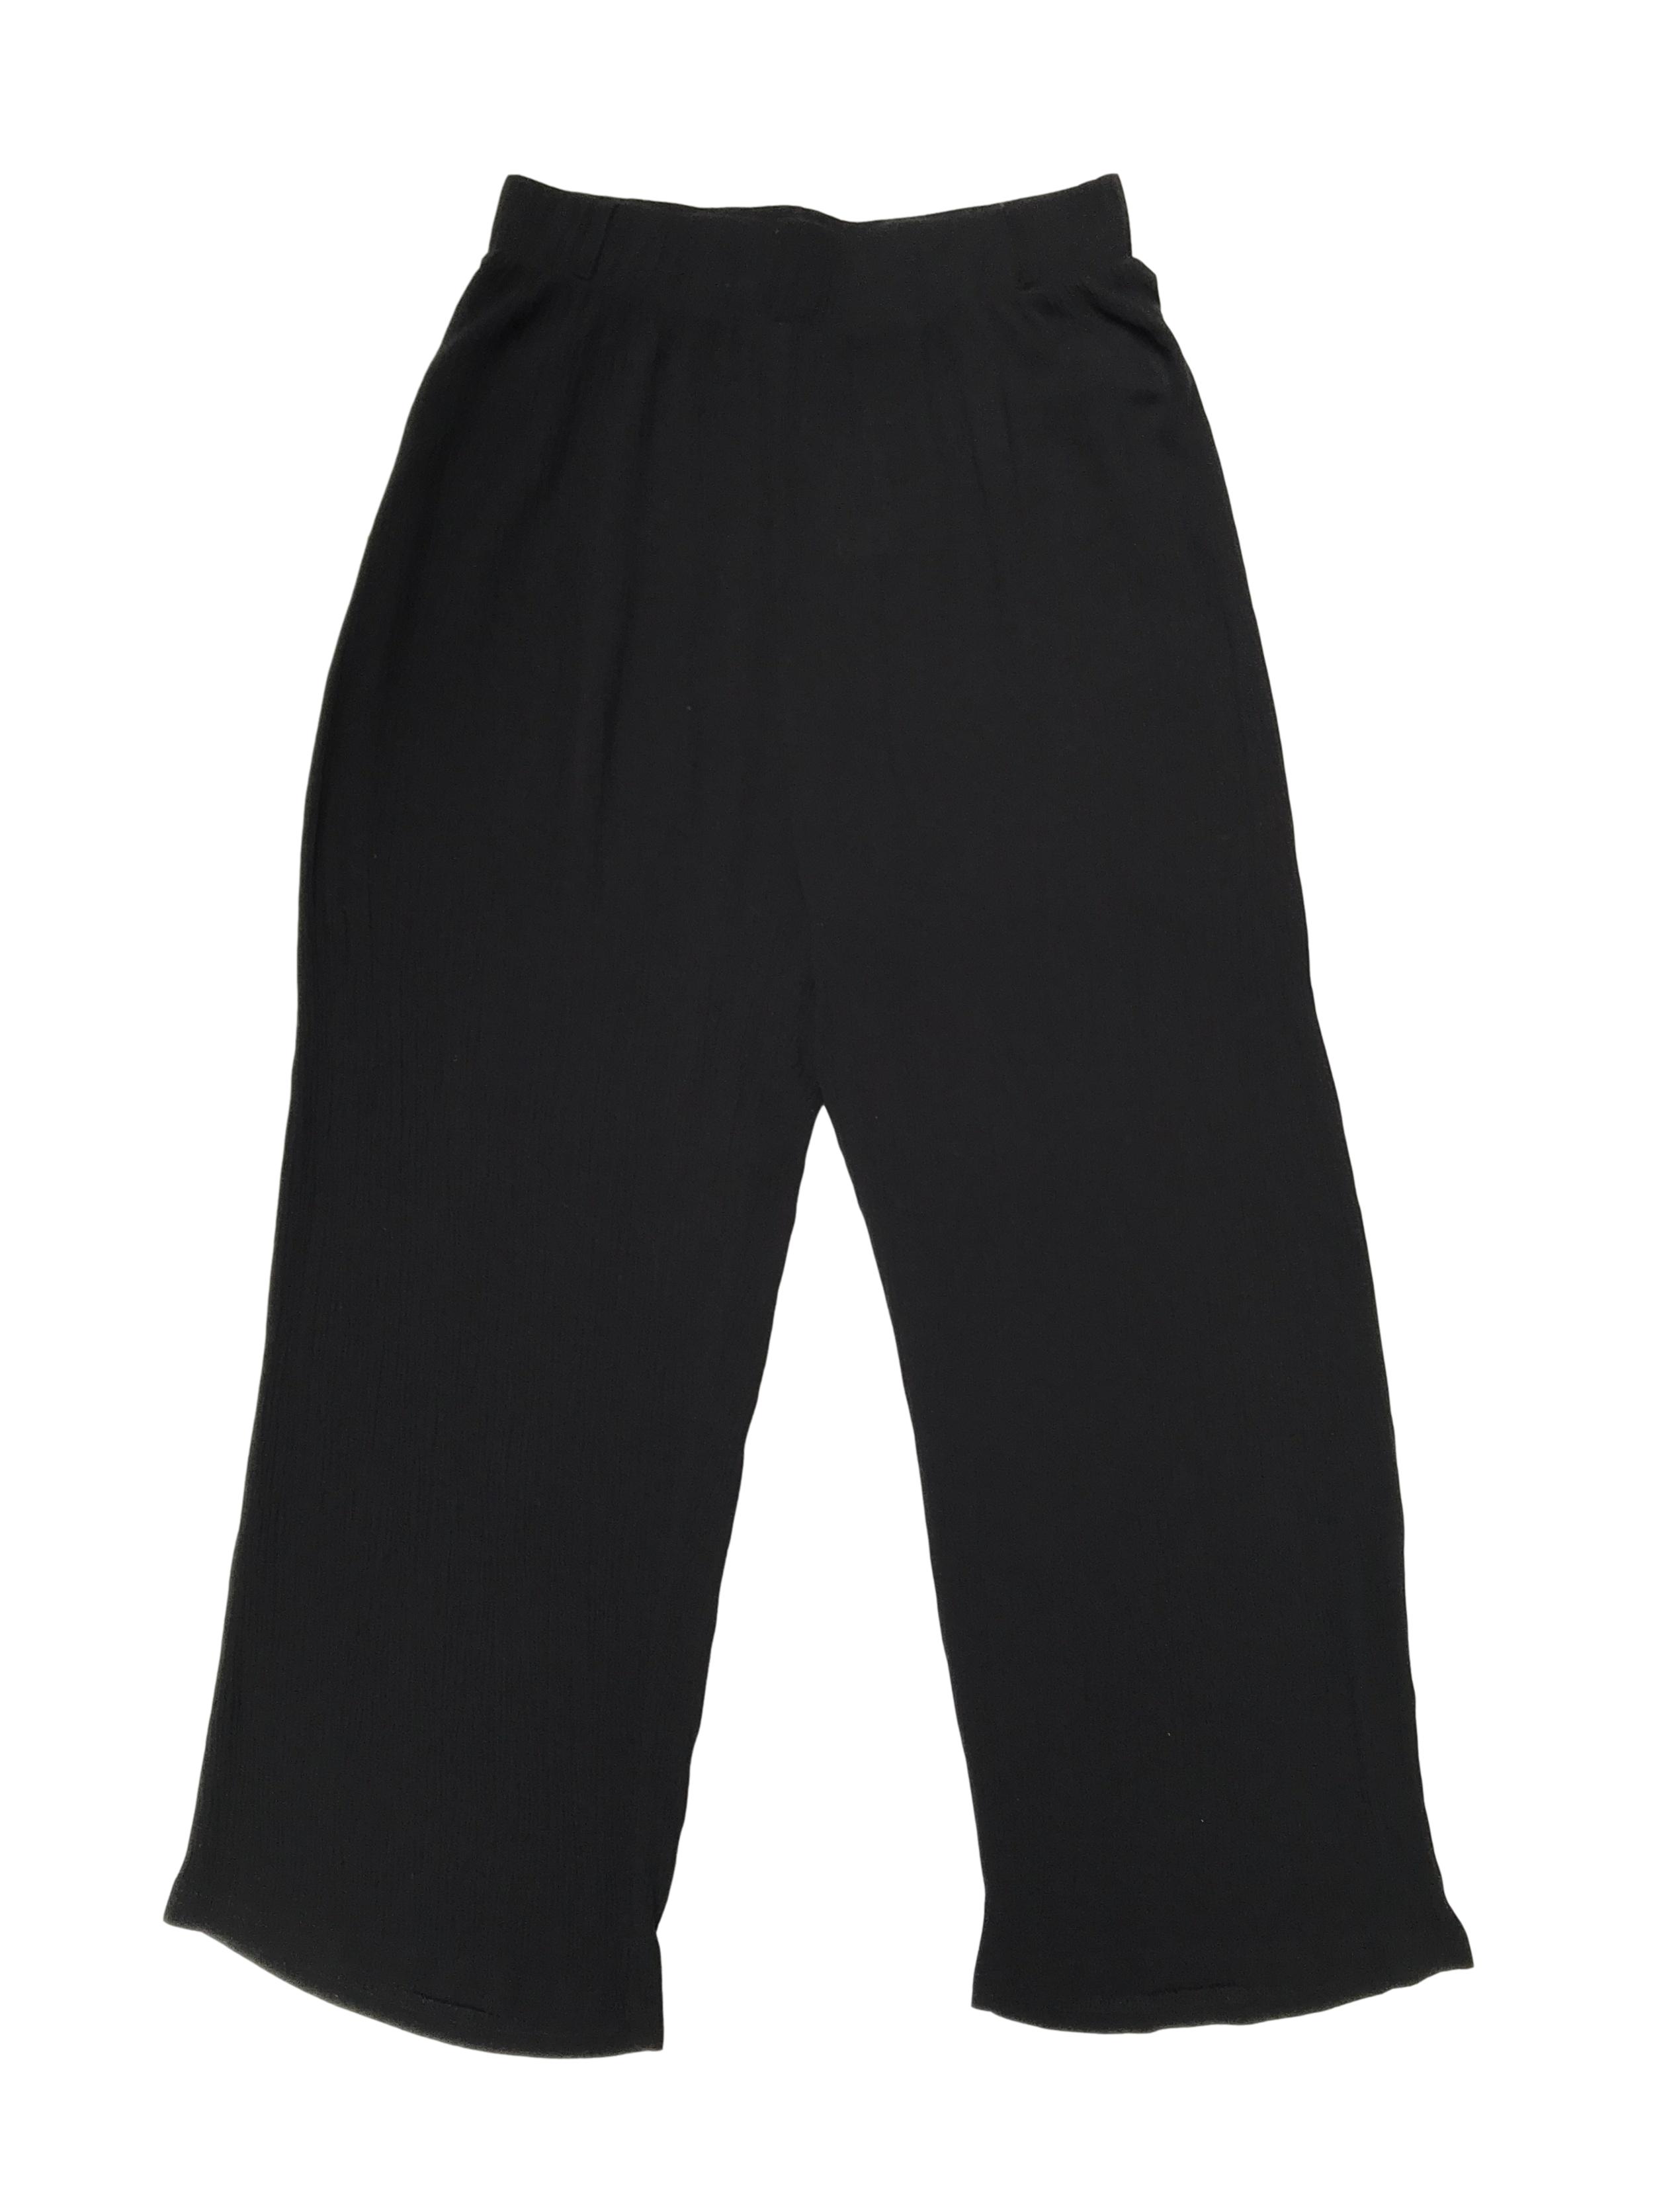 Pantalón a la cintura negro texturado con elástico en la pretina, sobre el tobillo. Largo 90cm